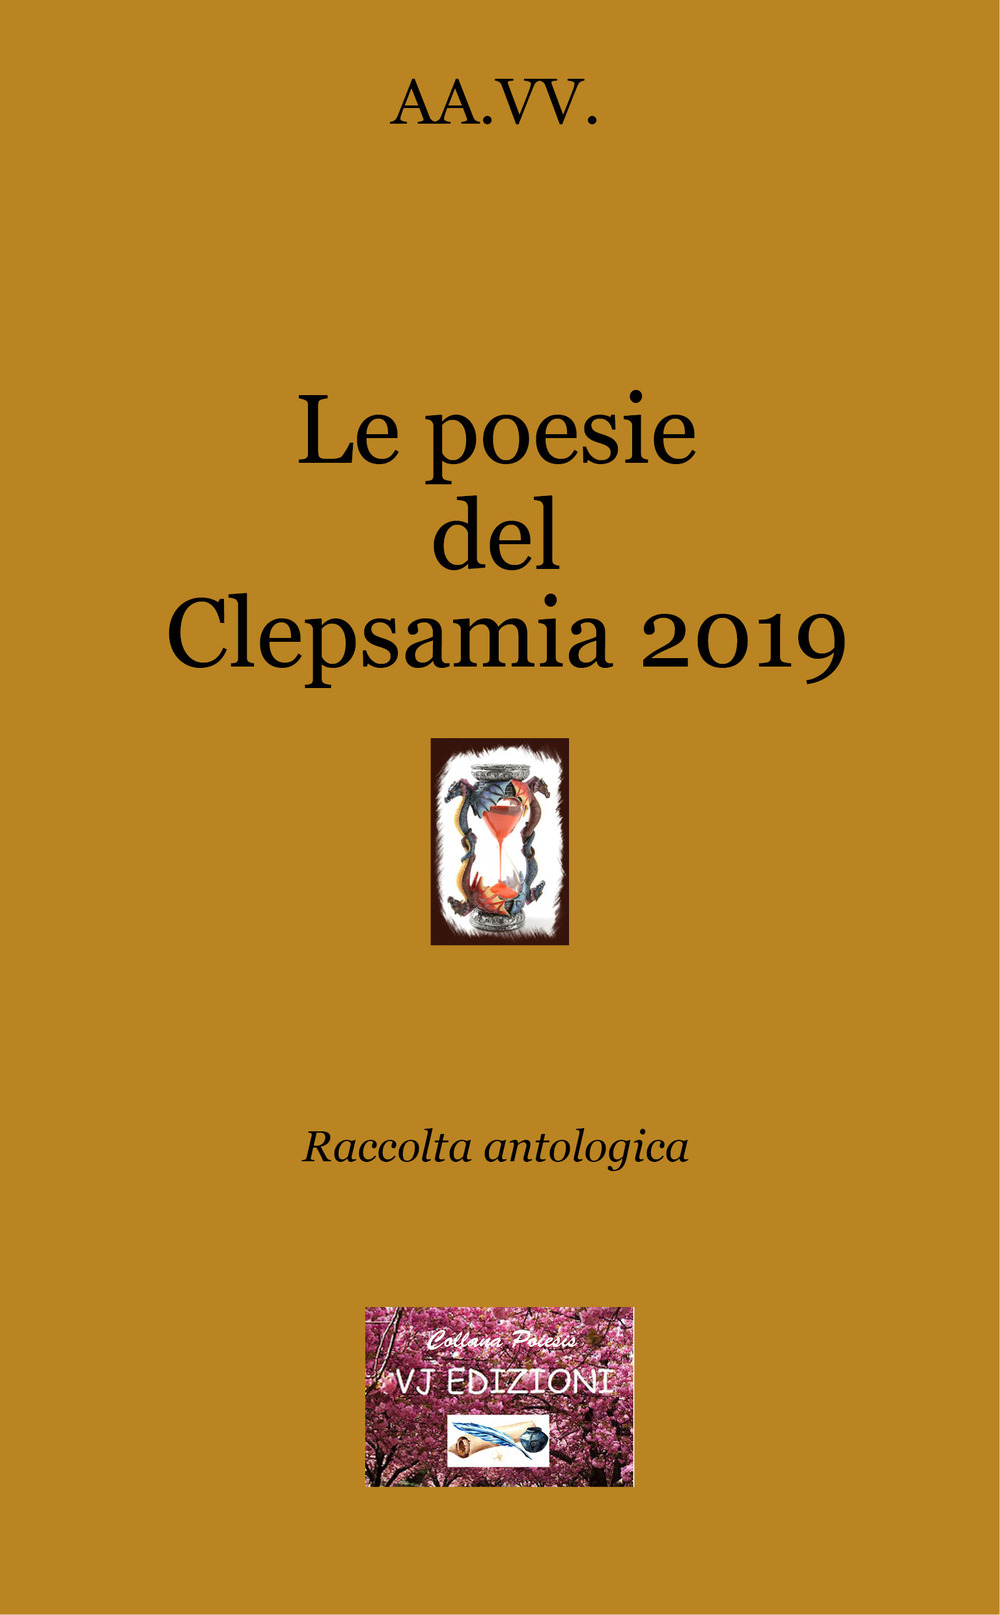 Le poesie del Clepsamia 2019